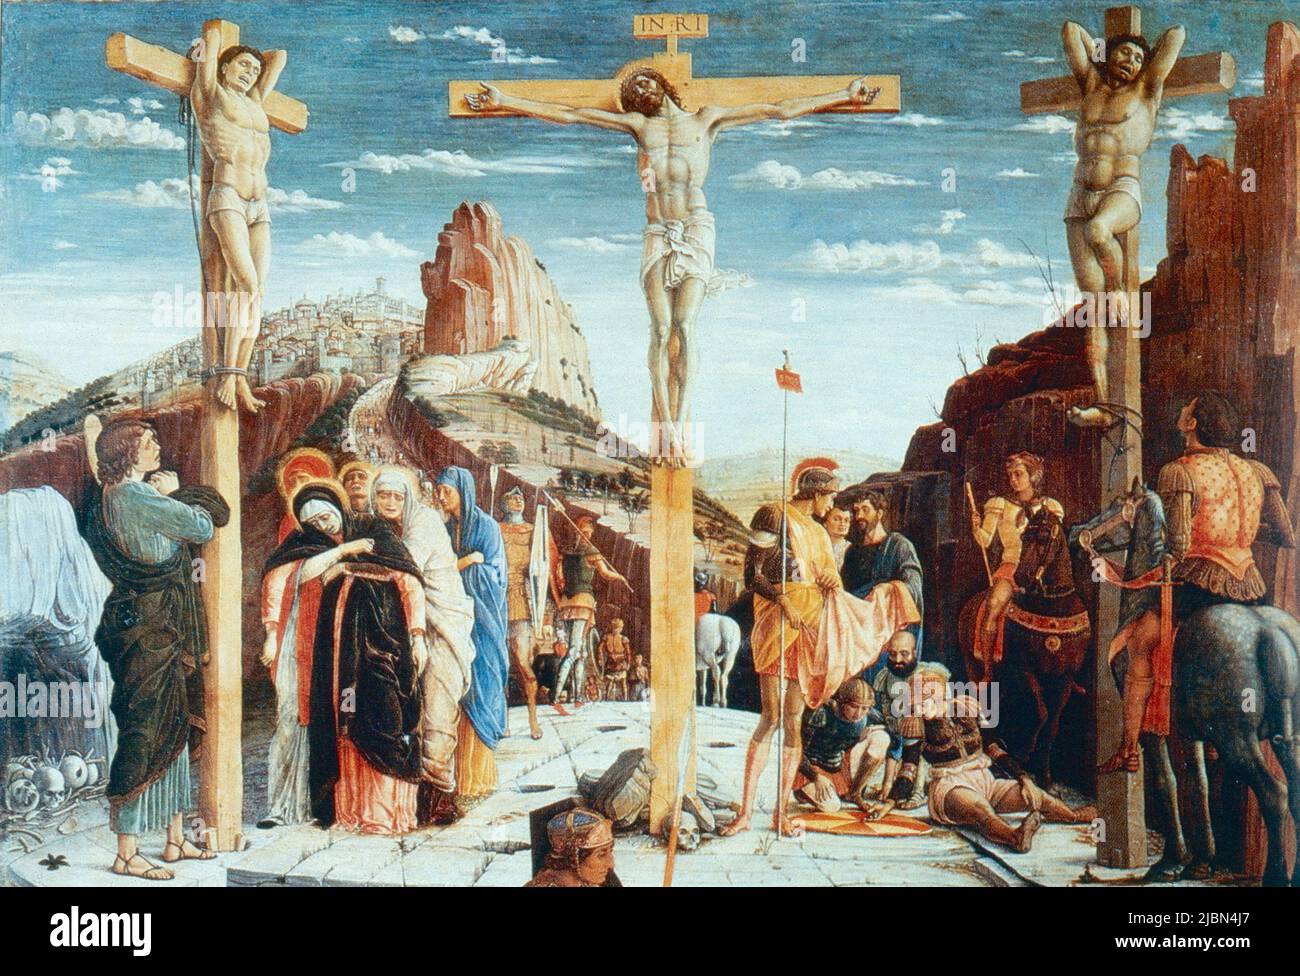 The Calvary, painting by Italian artist Andrea Mantegna, 1400s Stock Photo